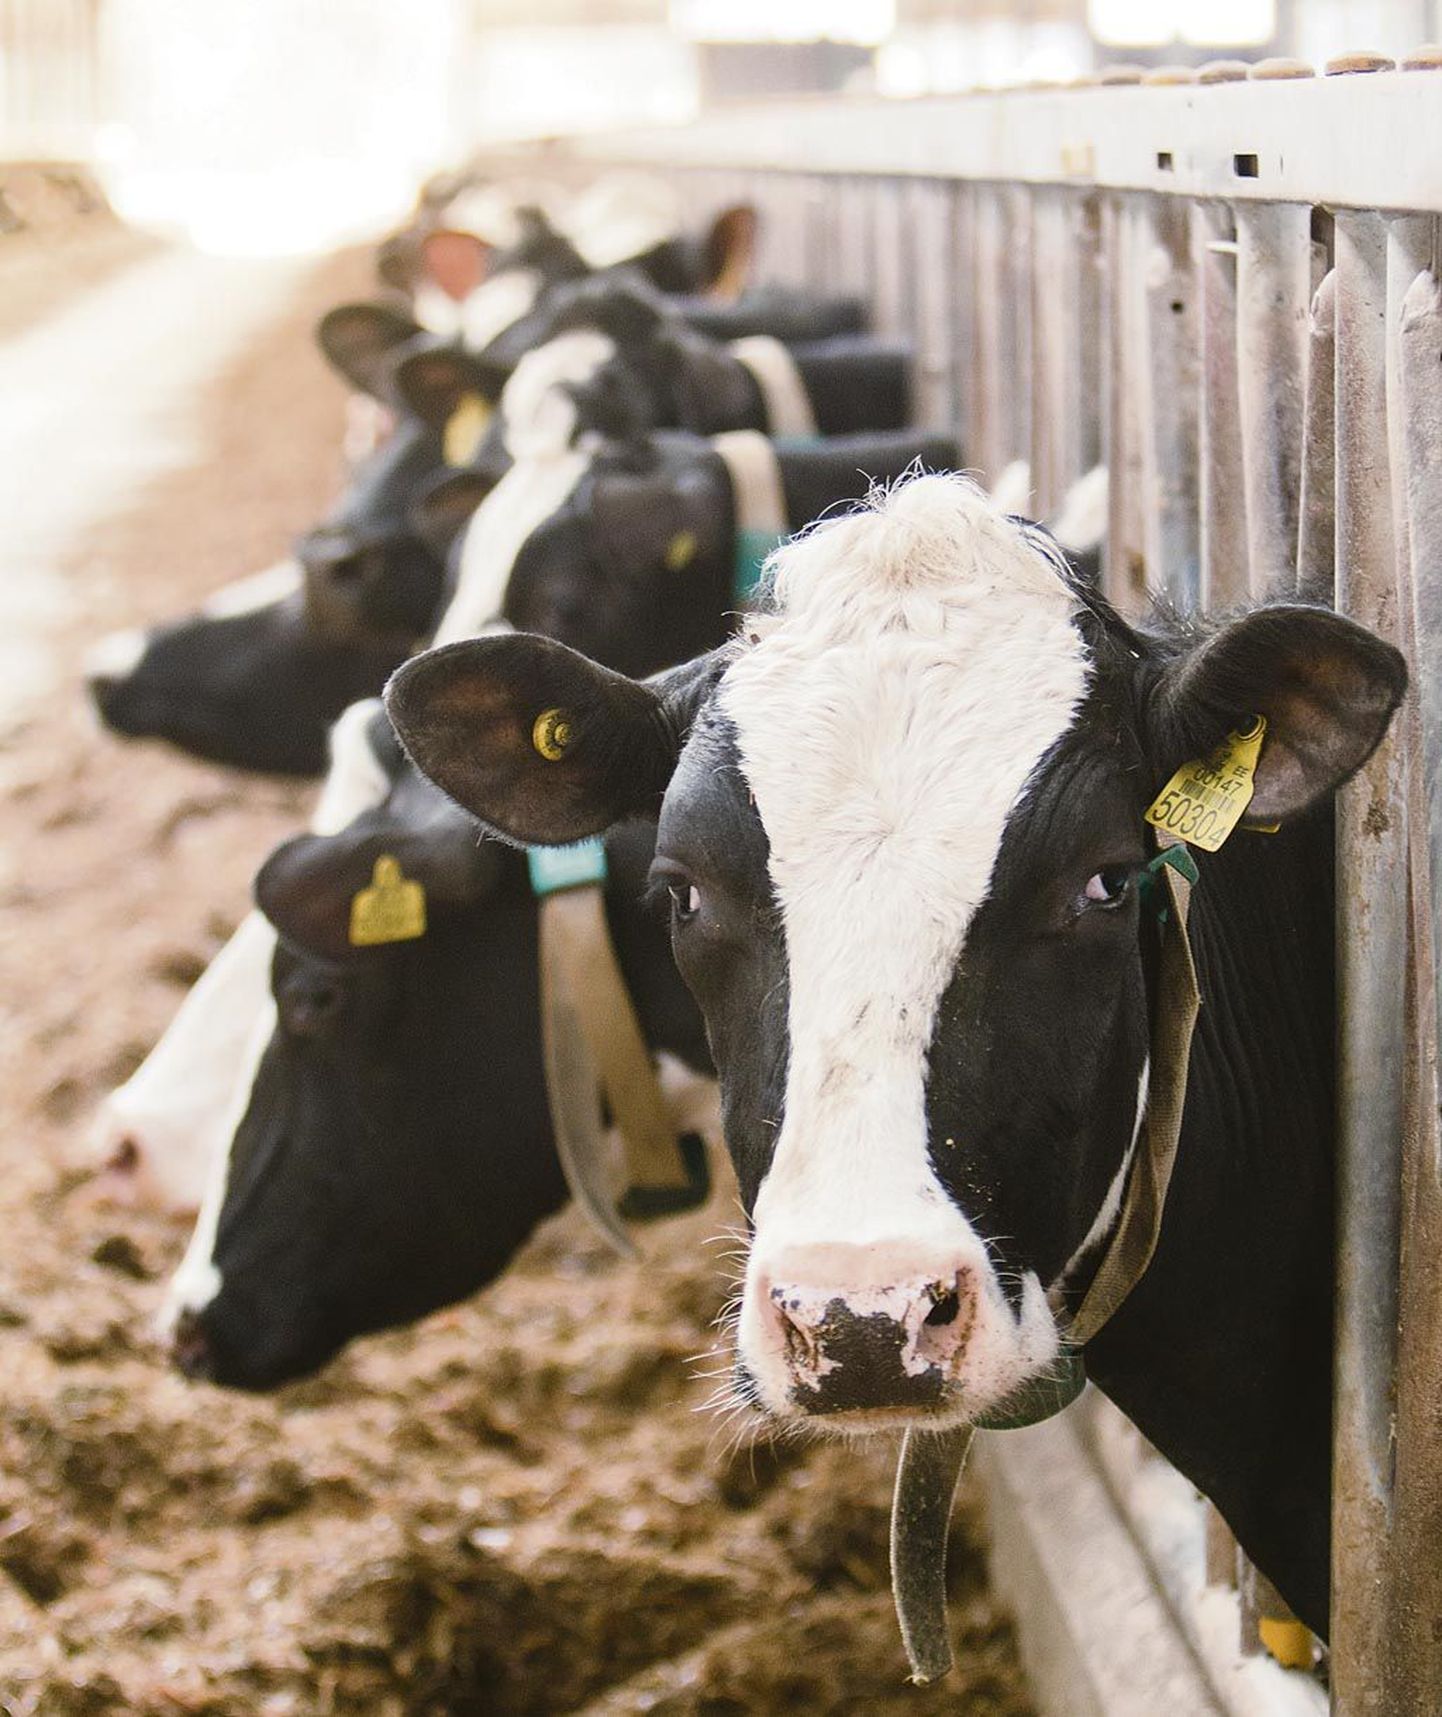 Halinga OÜ lehmad tahaksid kõhu täis süüa, kuid Veikko Toomere sõnutsi pole põllumajandusettevõttel rahaliselt võimekust sööta ette valmistada.